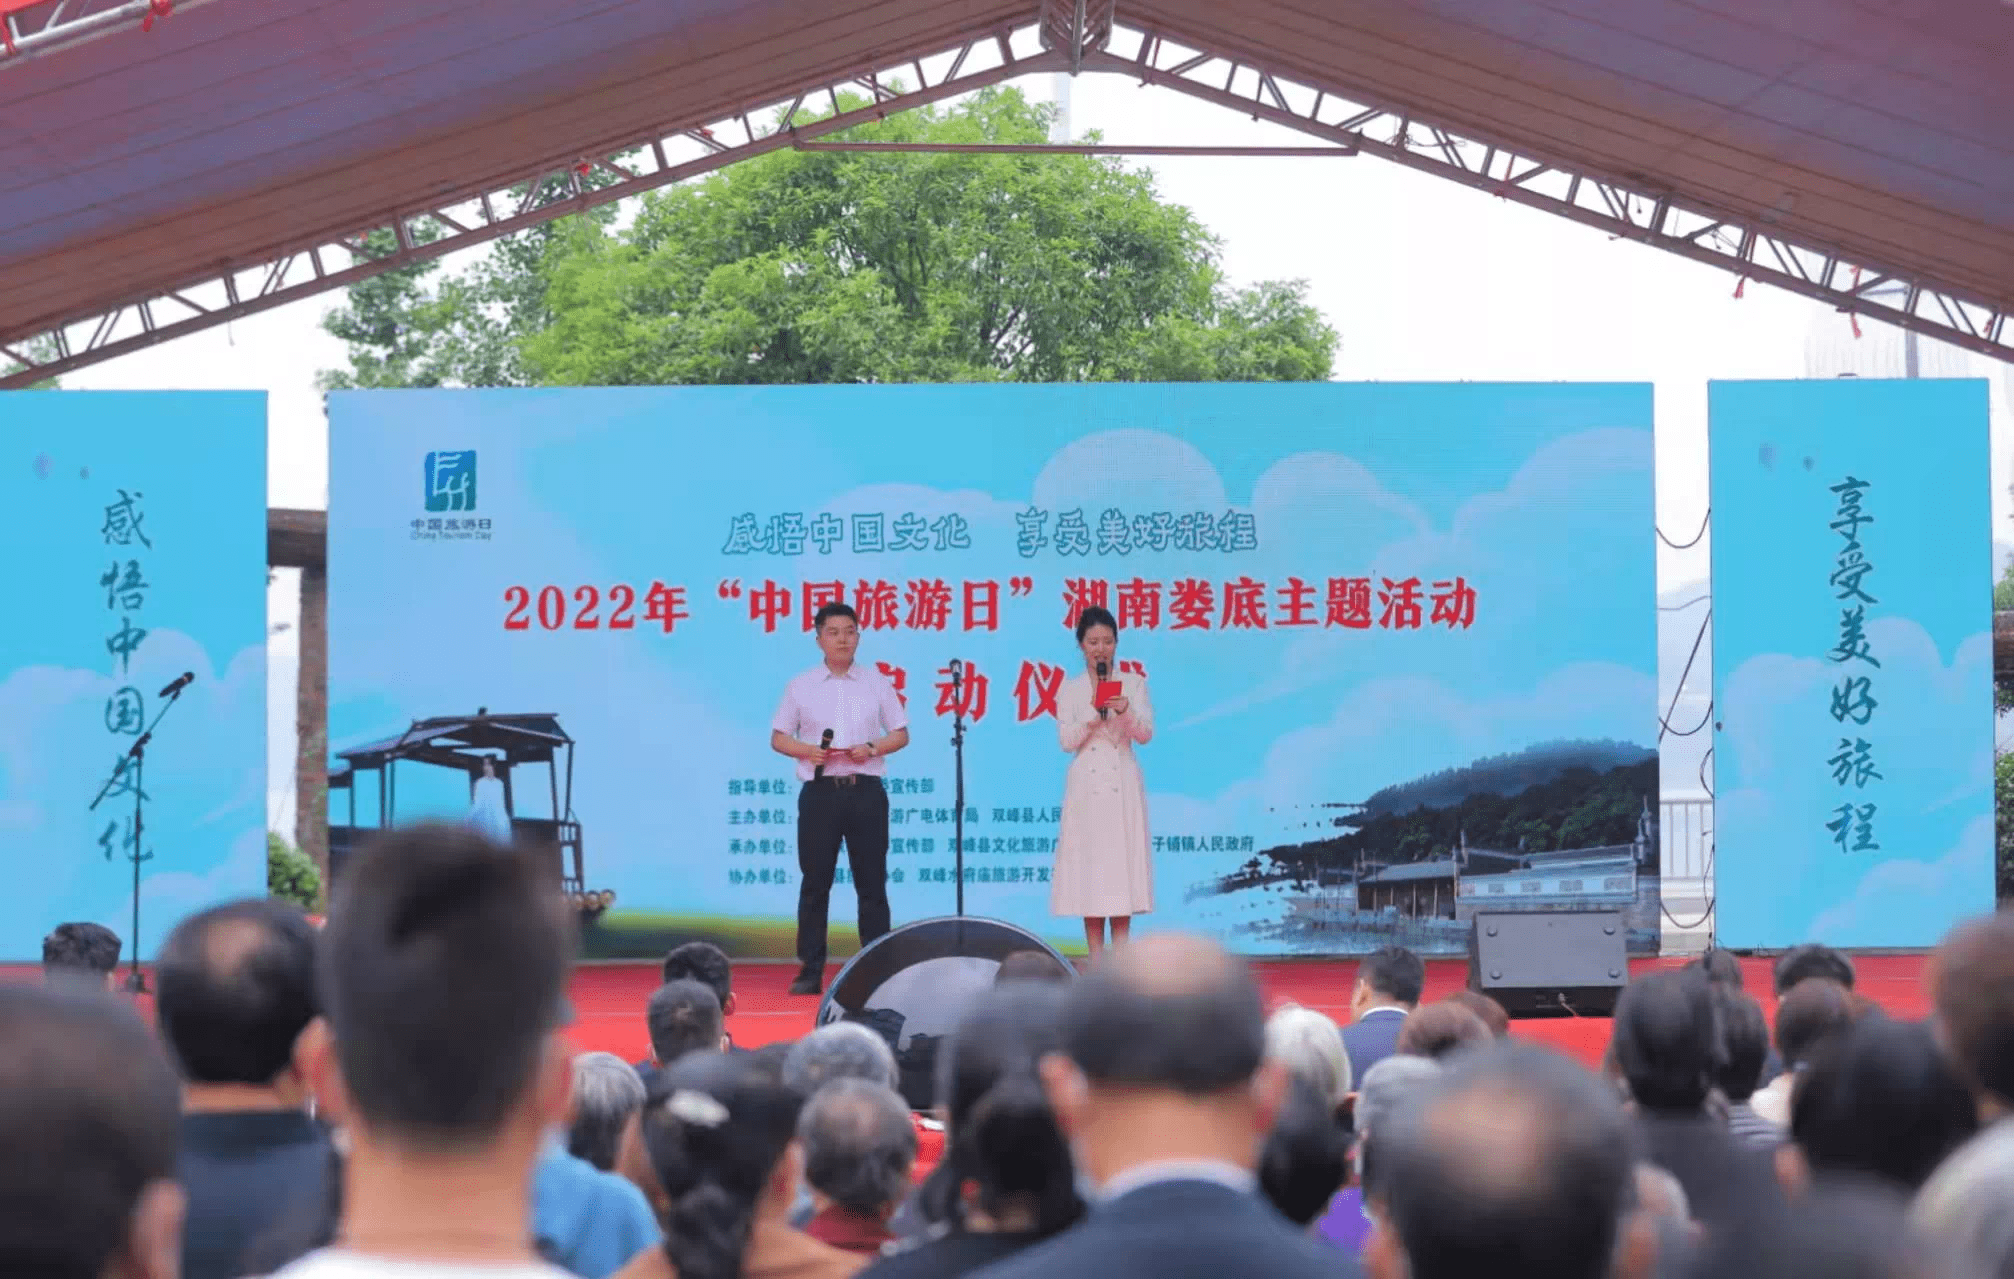 2022年“中国旅游日”湖南娄底主题活动启动仪式盛大来袭！